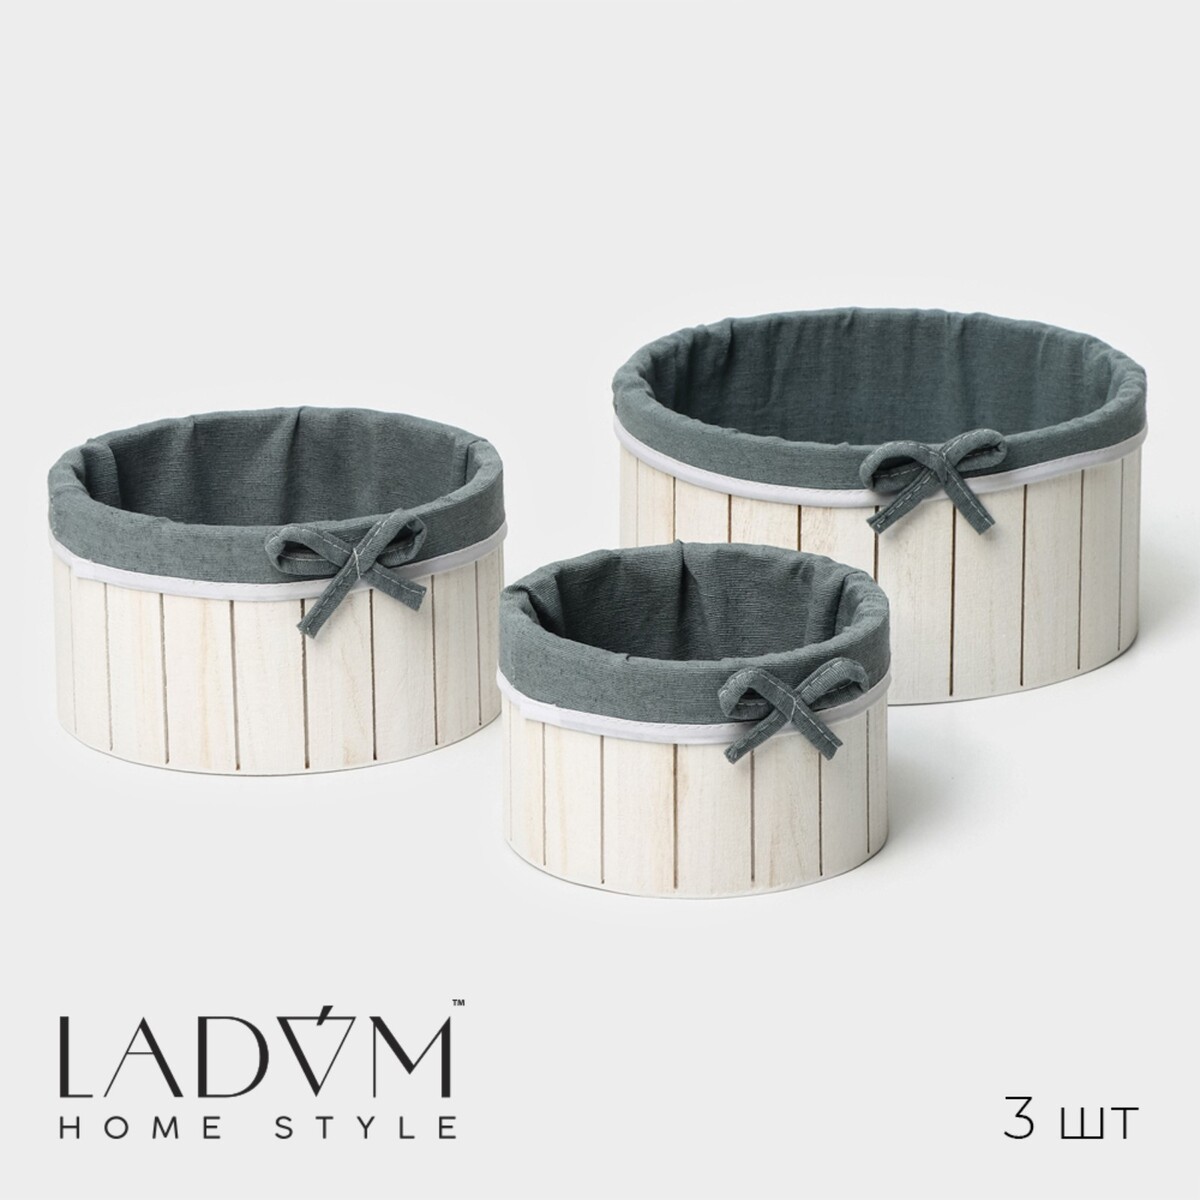 Набор интерьерных корзин ручной работы ladо́m, круглые, 3 шт, размер: 15×15×9 см, 19×19×10 см, 23×23×11 см